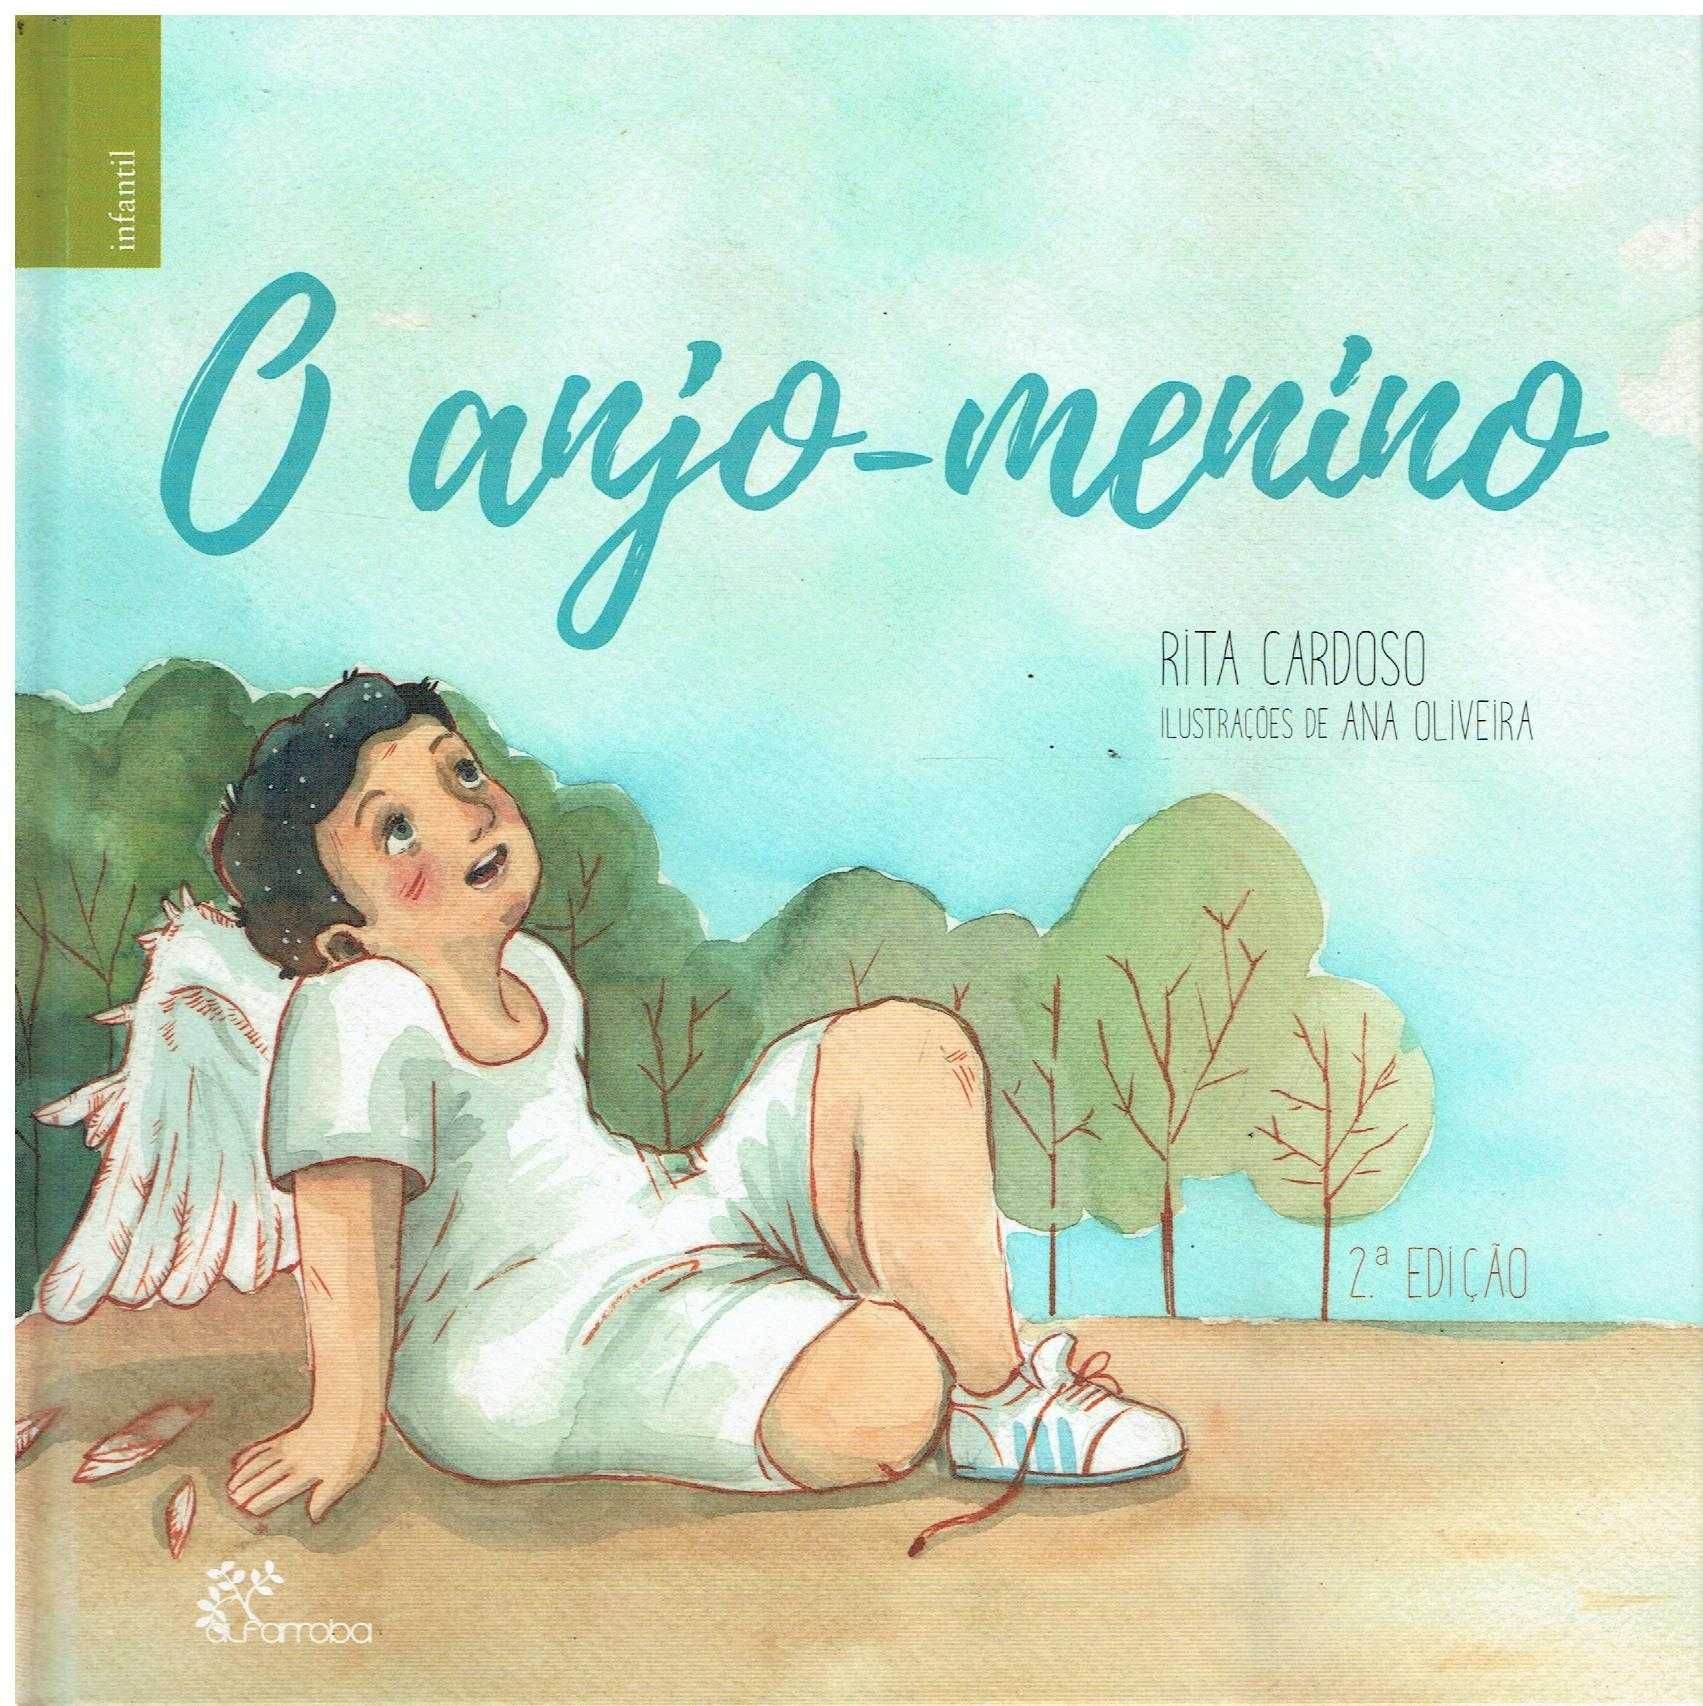 13566

O Anjo-Menino
de Rita Cardoso